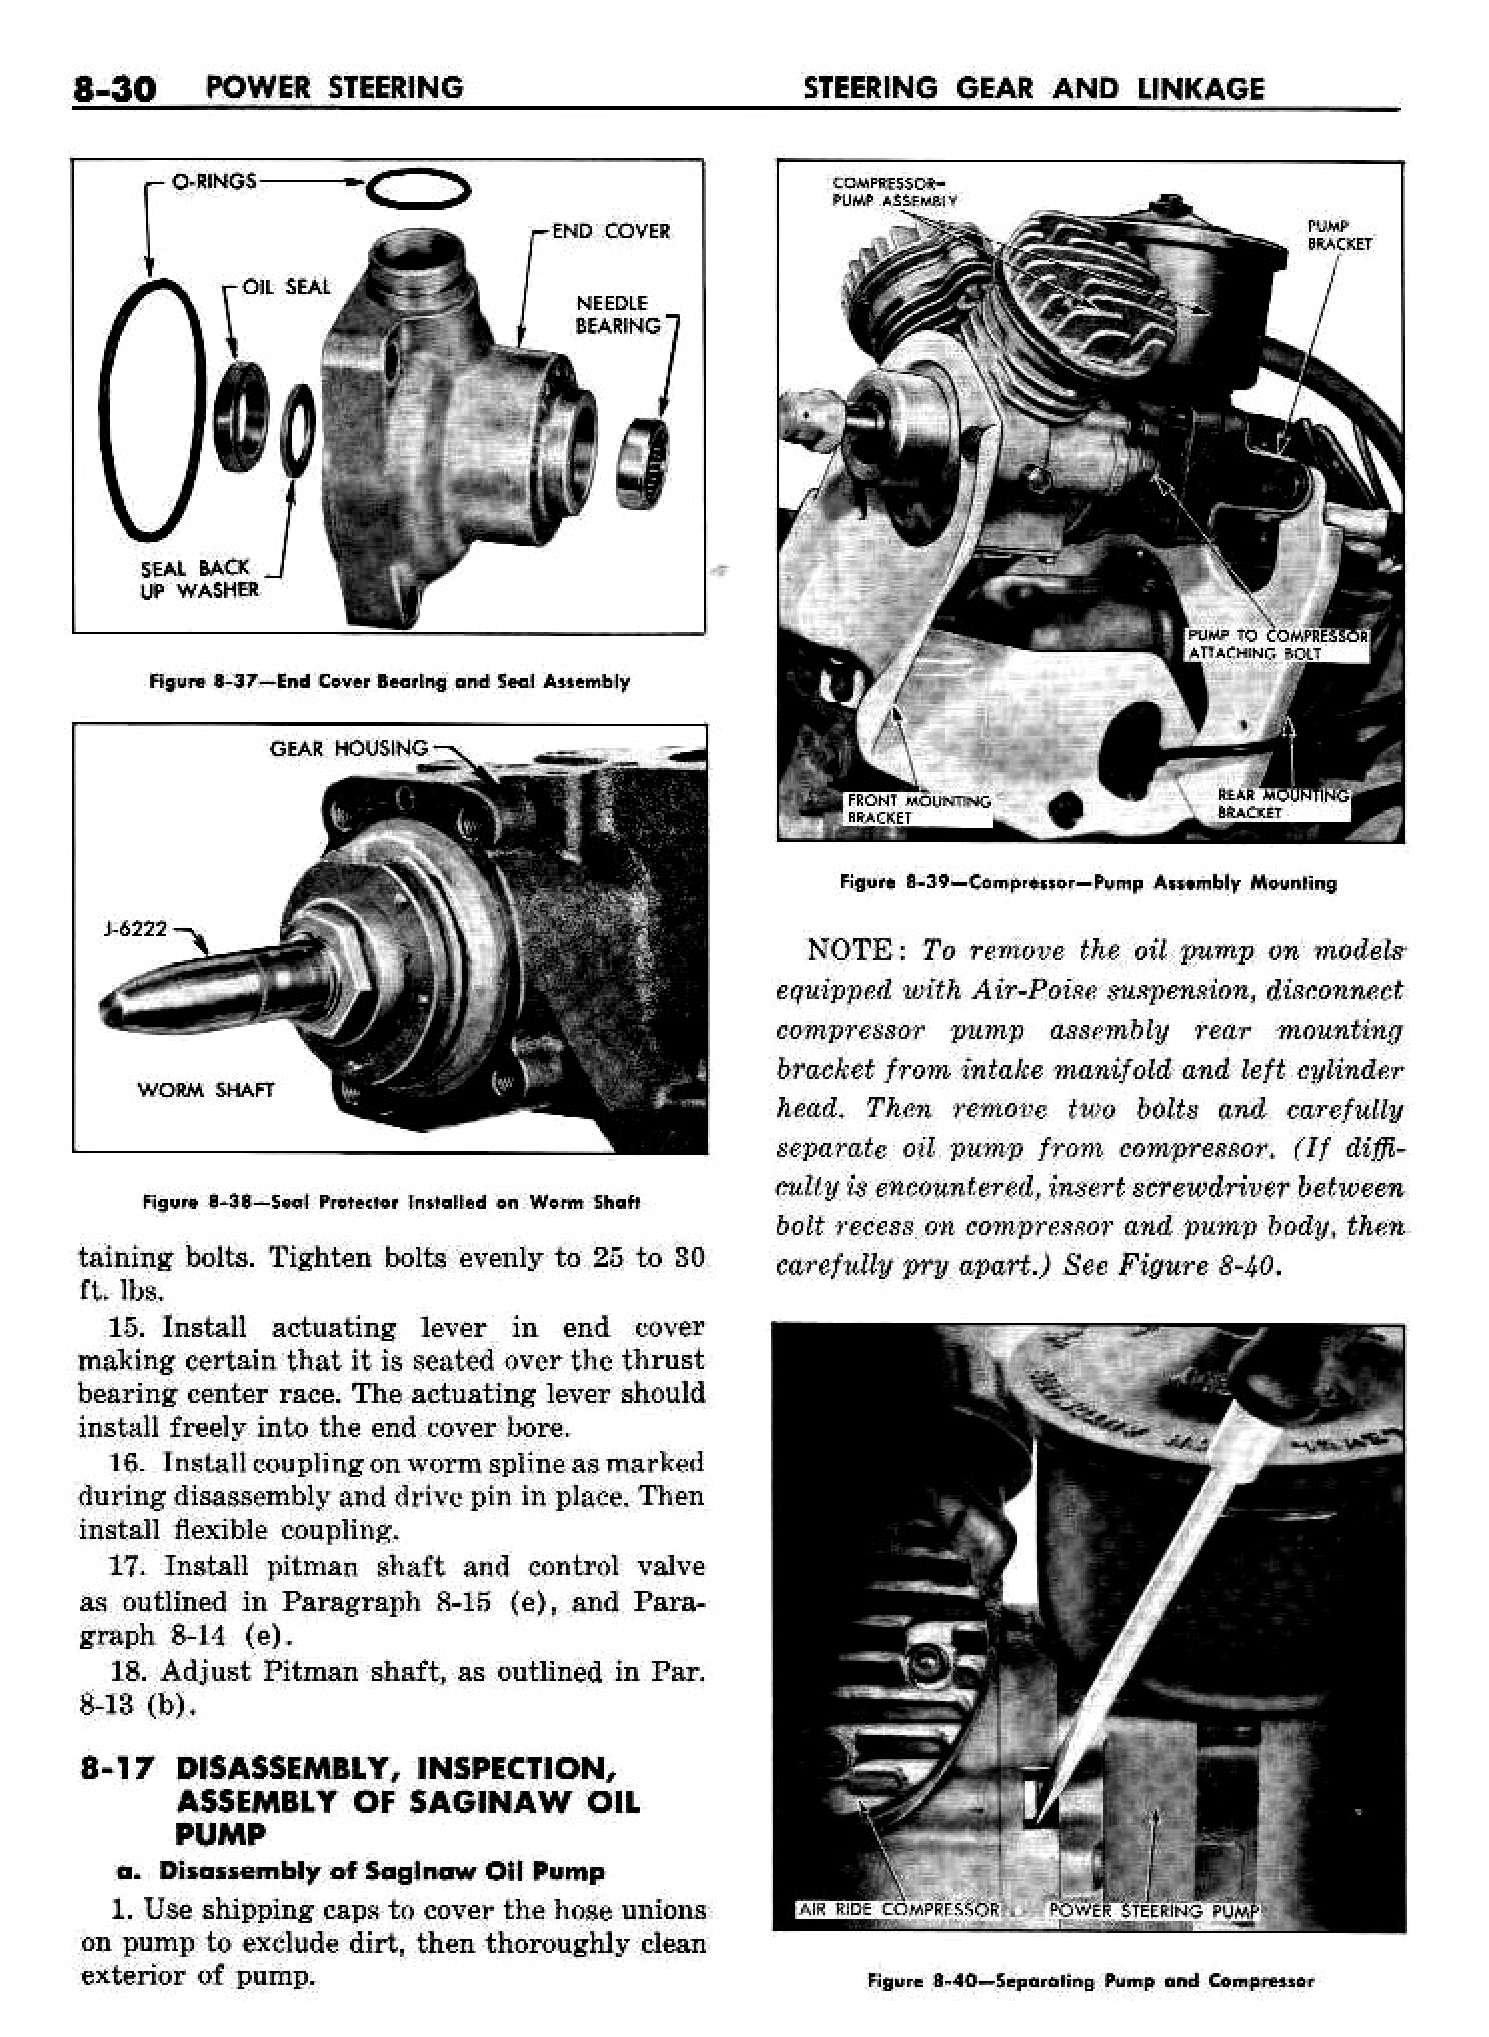 n_09 1958 Buick Shop Manual - Steering_30.jpg